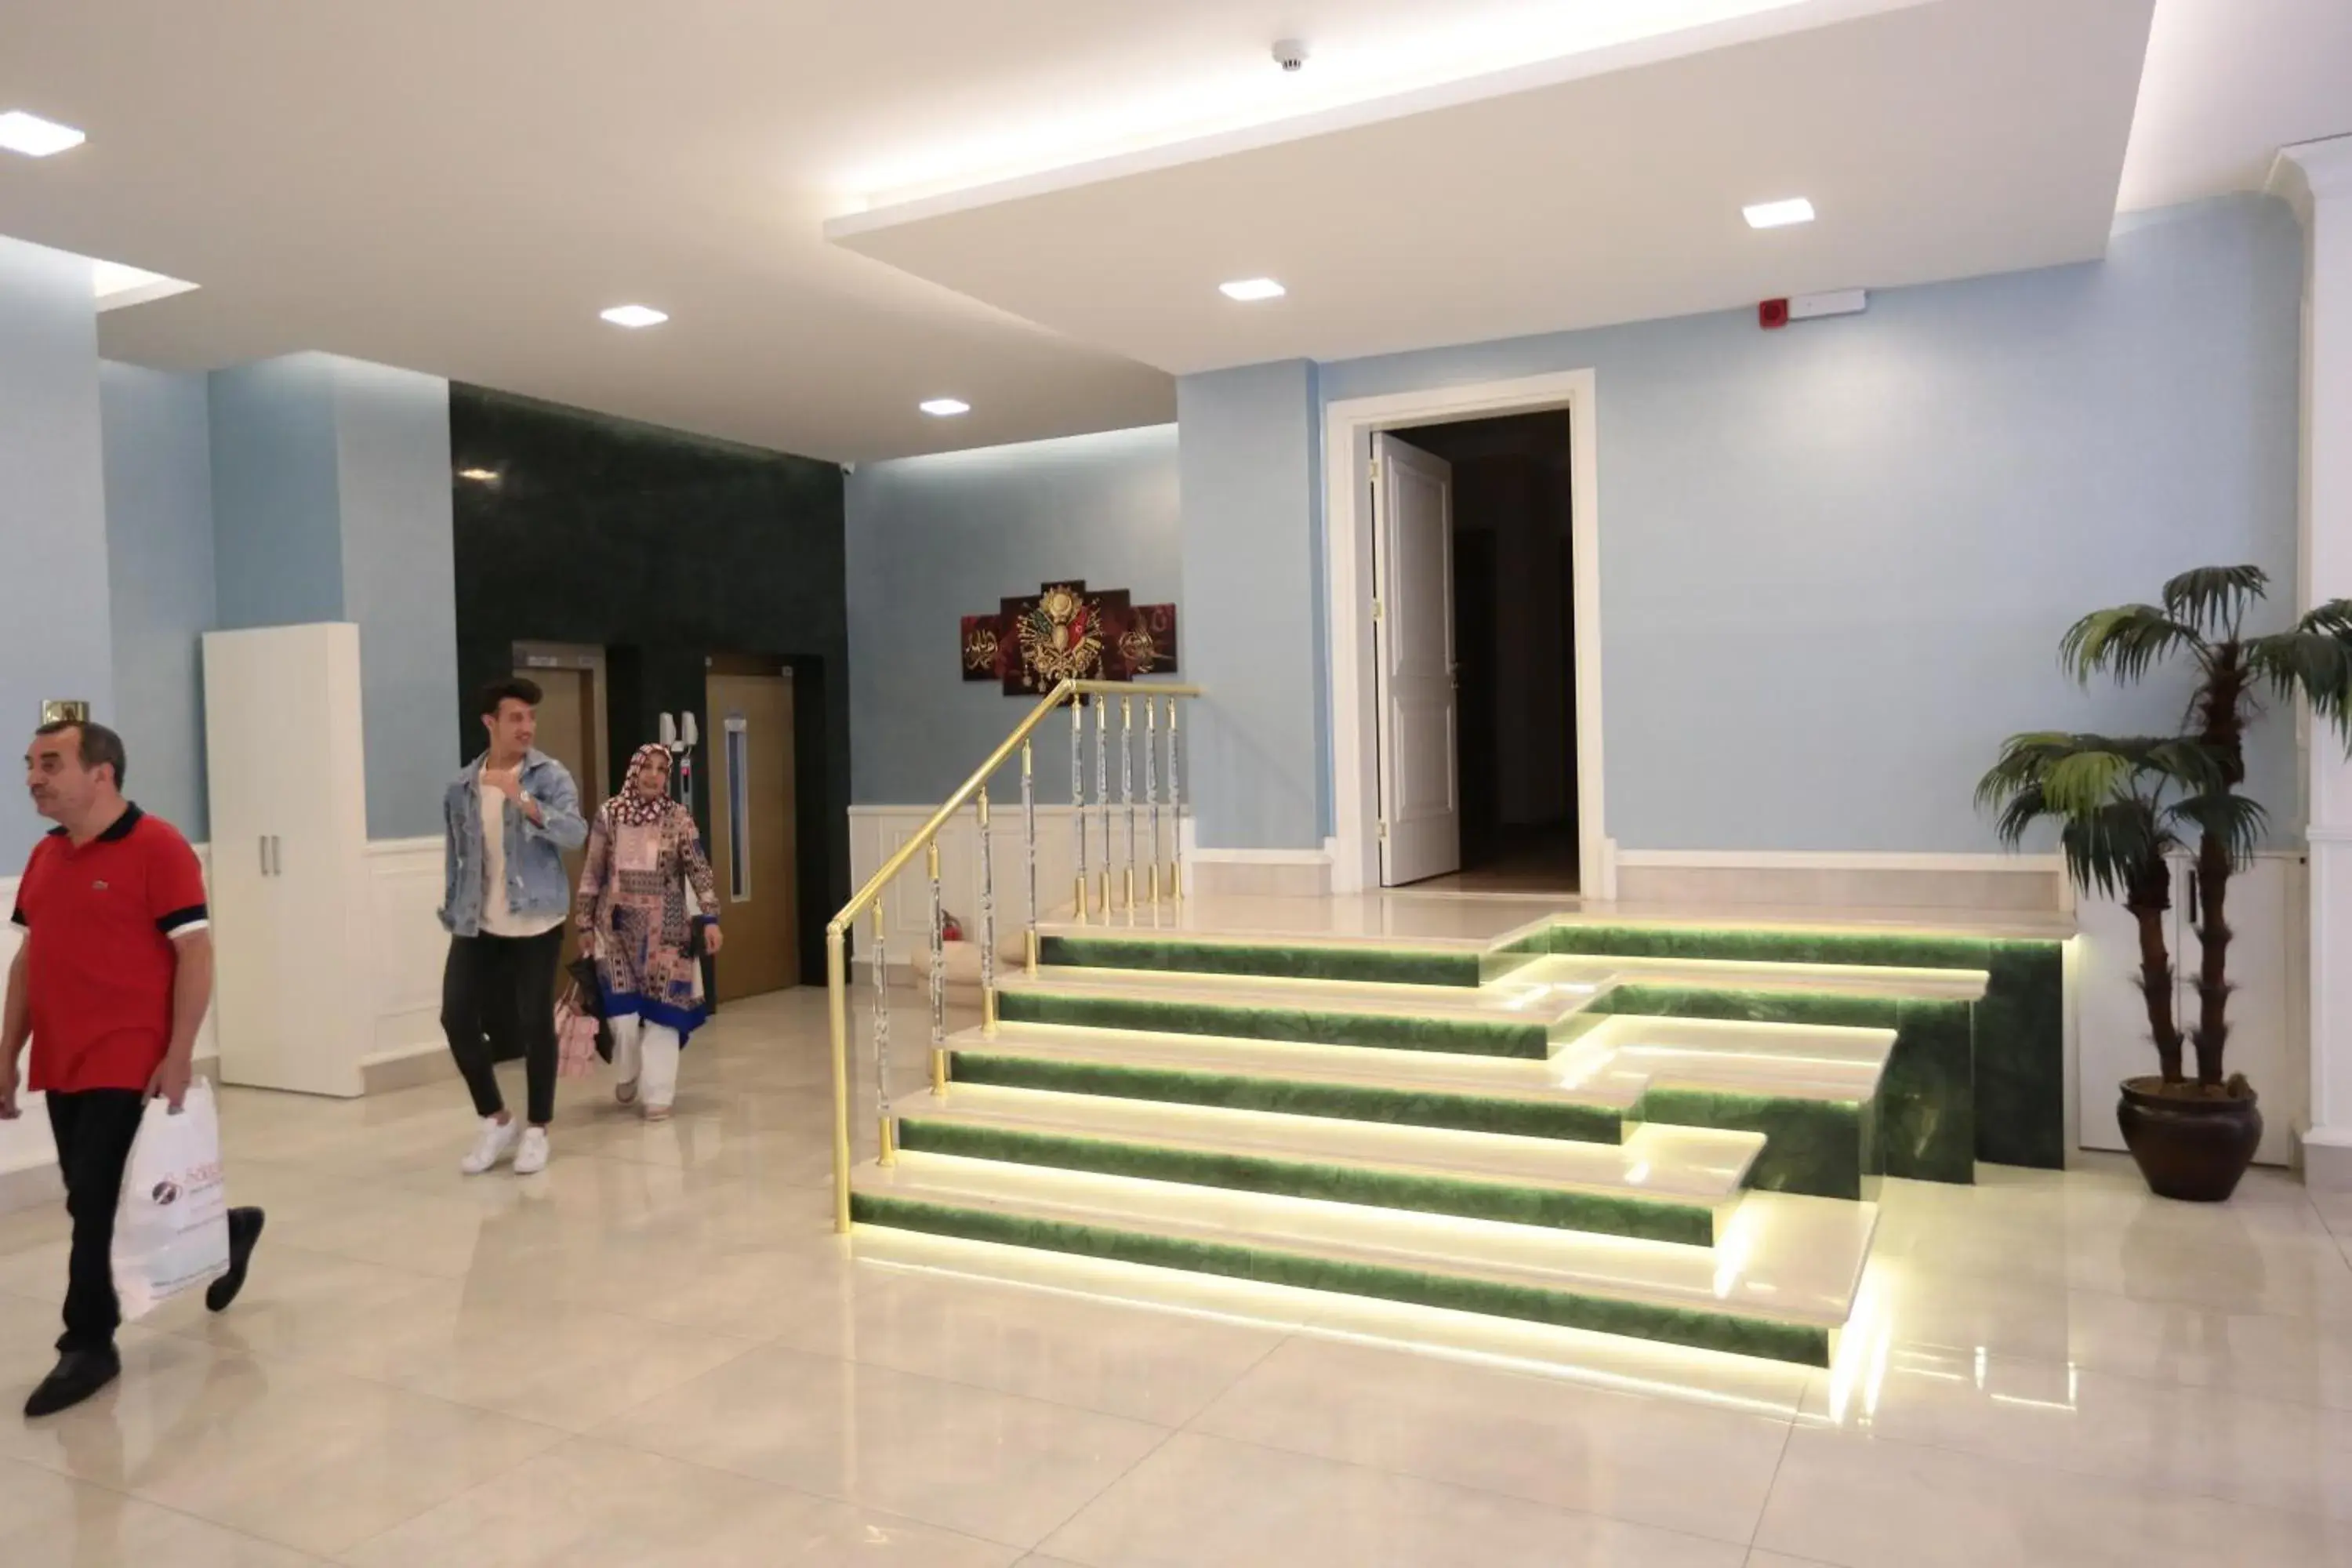 Lobby or reception in Bursa Palas Hotel